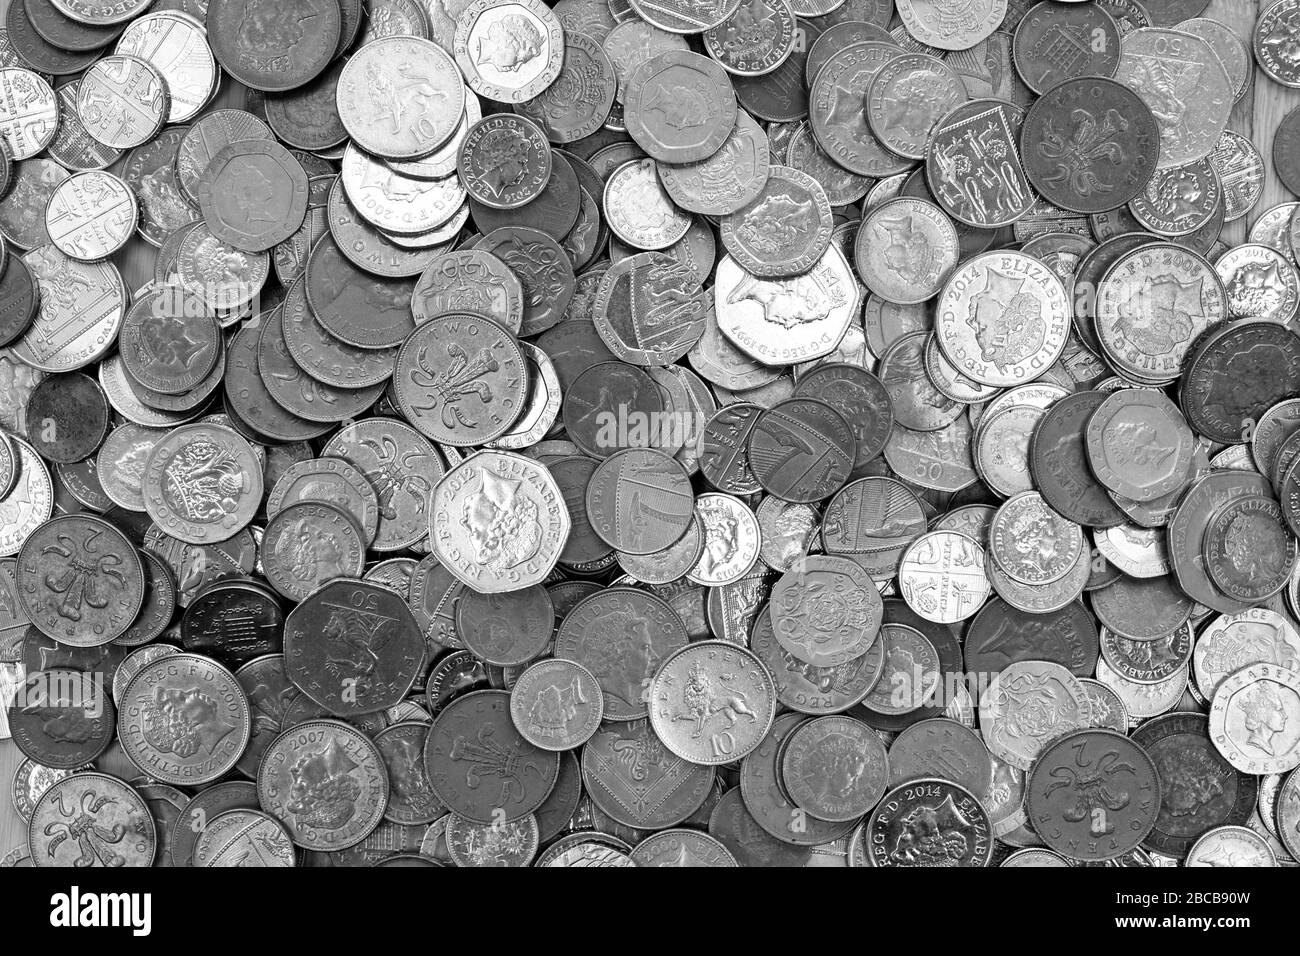 Monnaie britannique, des centaines de pièces de monnaie de couleur cuivre et argent britannique se sont aléatoirement enroulées l'une sur l'autre, une livre de monnaie, cinquante penny, vingt penny, deux p Banque D'Images